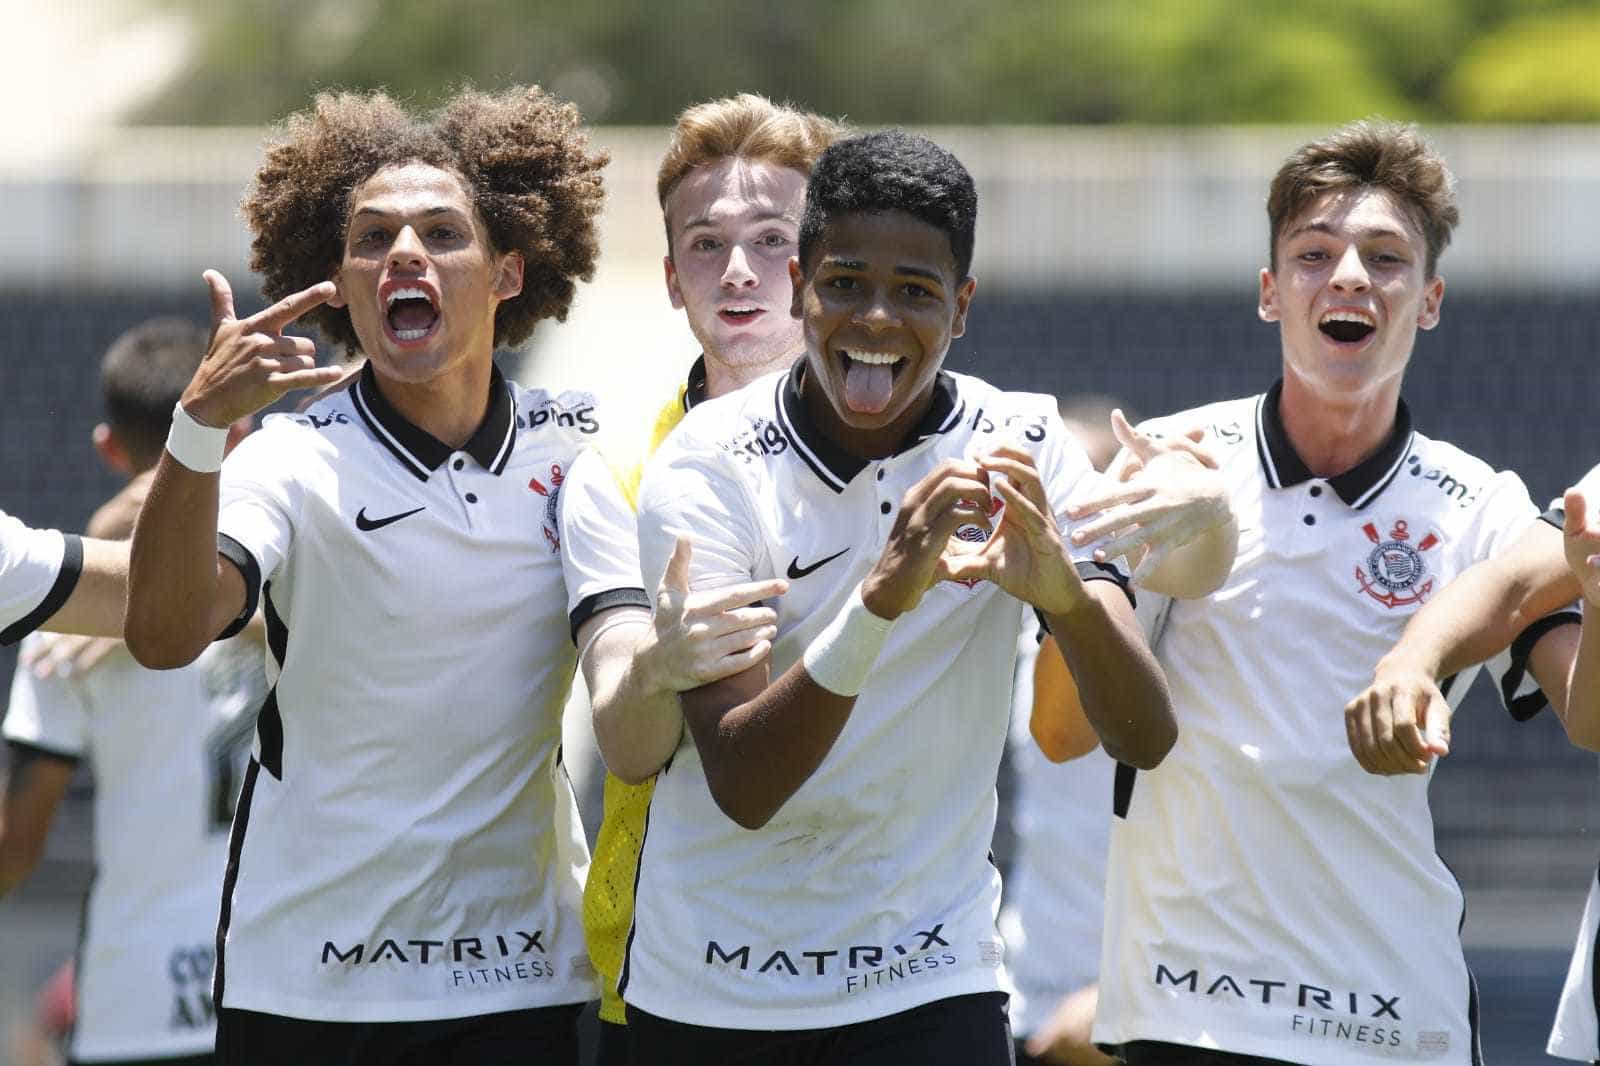 Brasileirão Sub-17: Corinthians vence de virada o São Paulo na Fazendinha